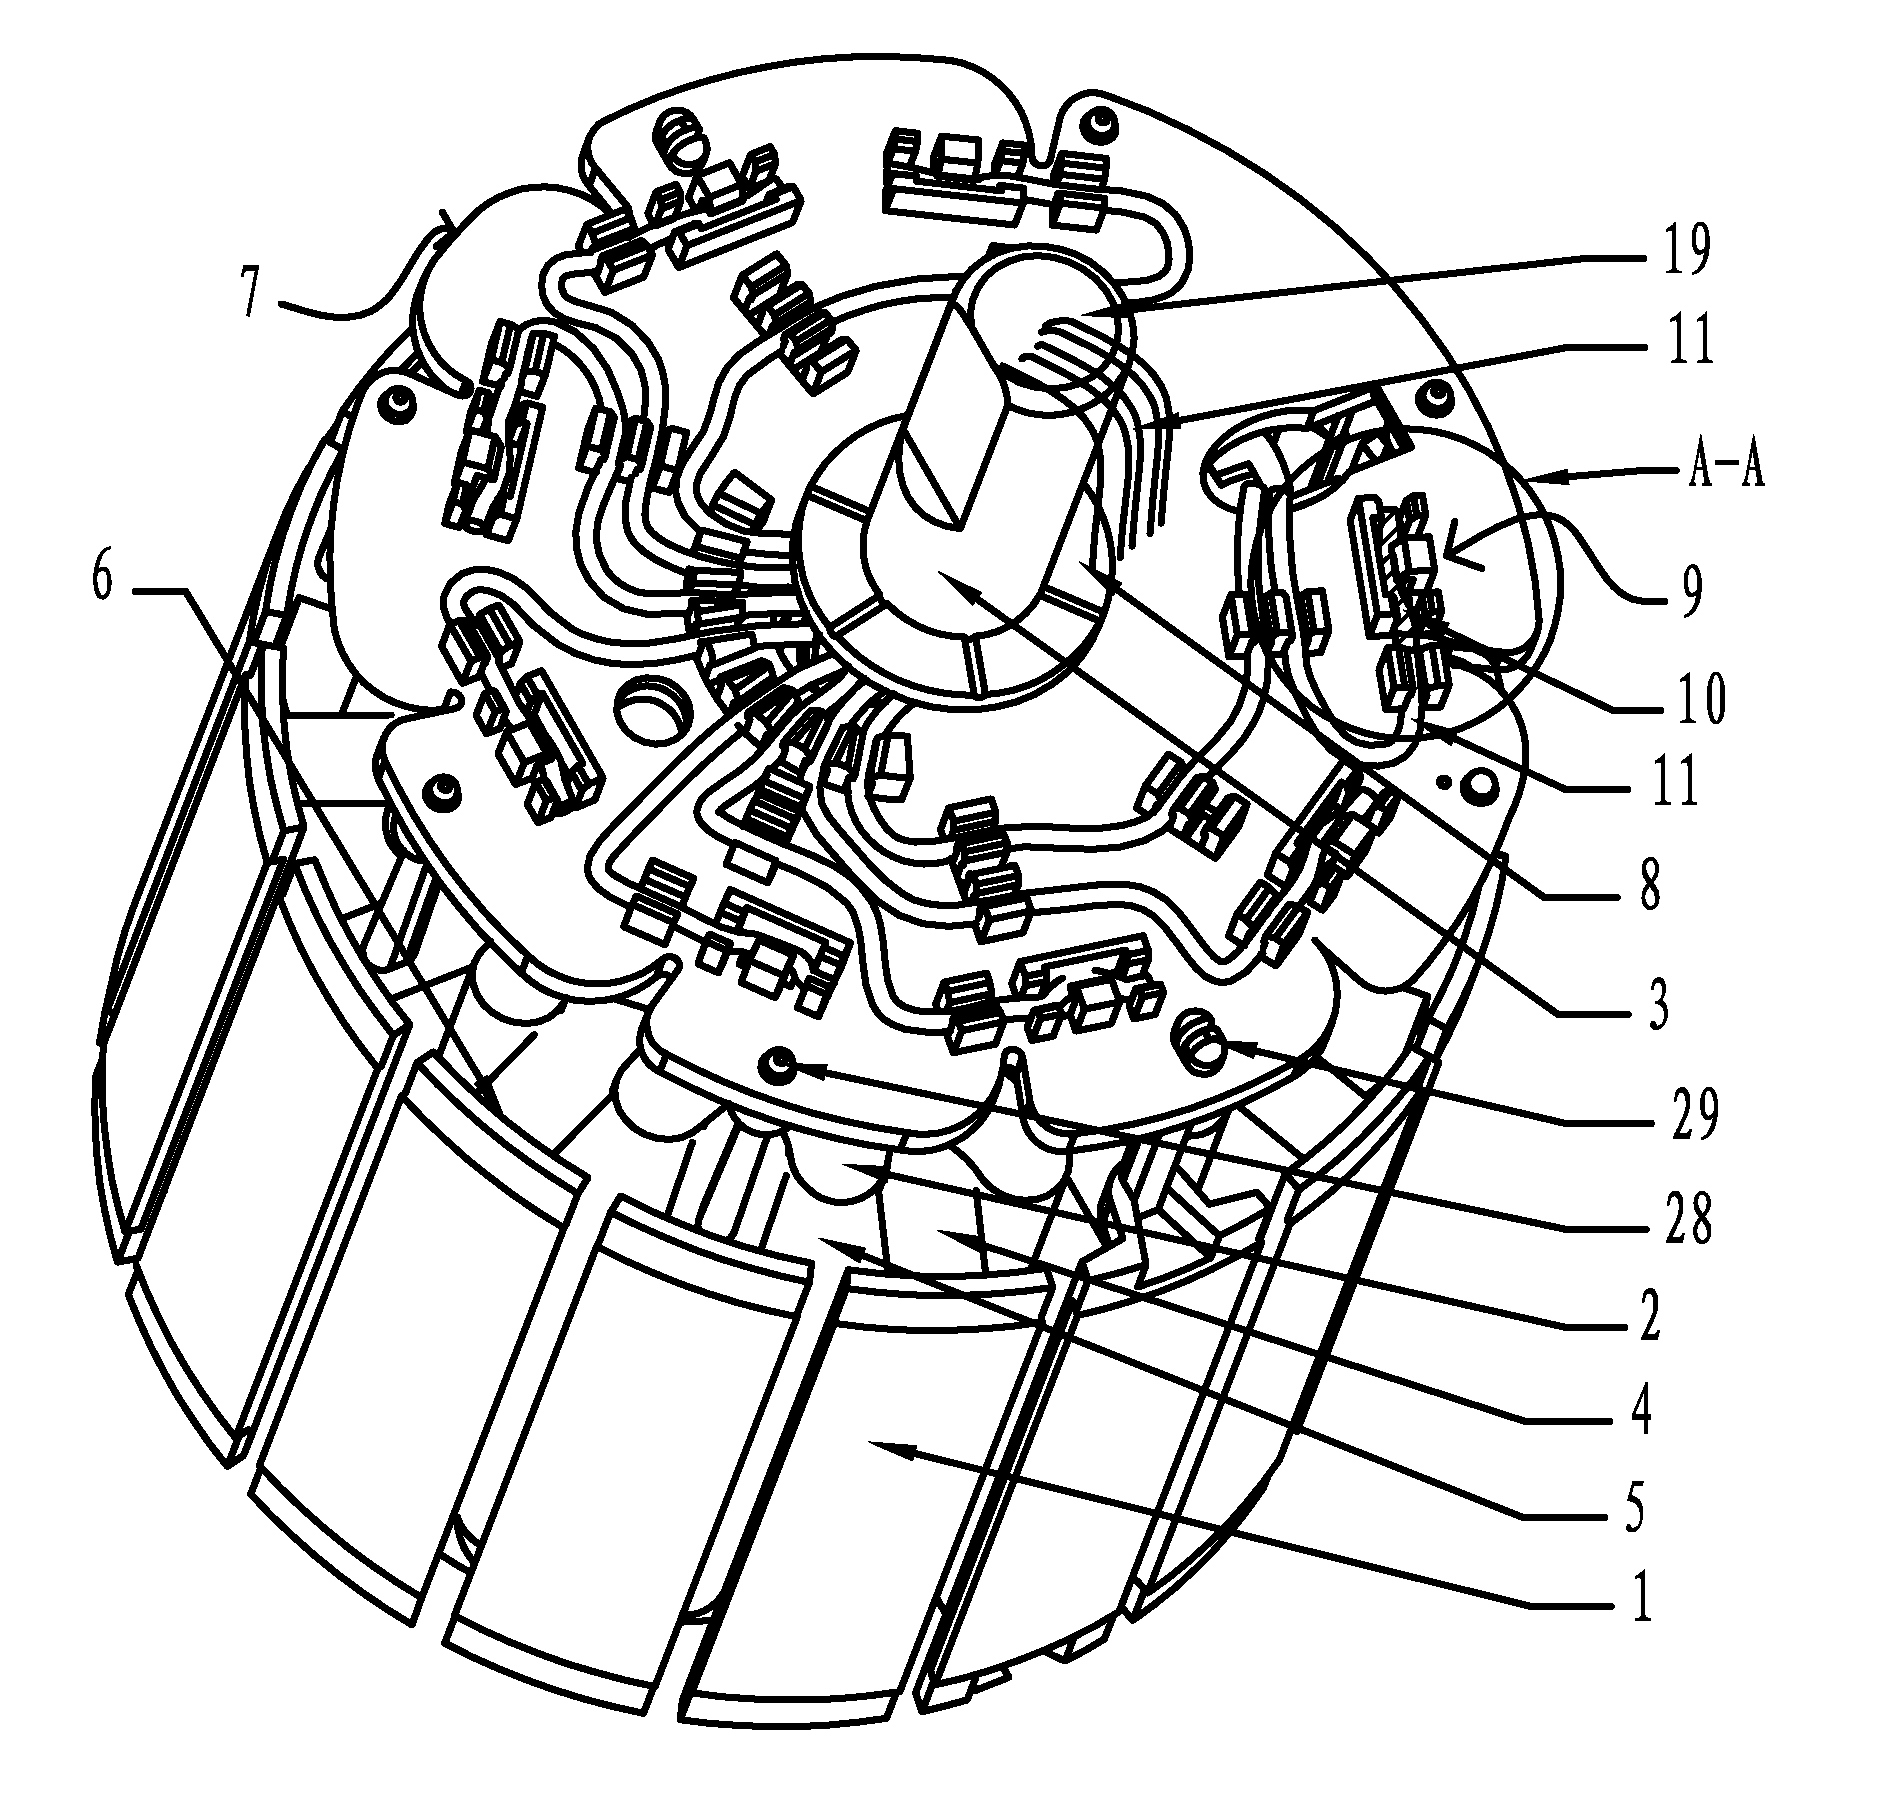 Stator for external rotor motor